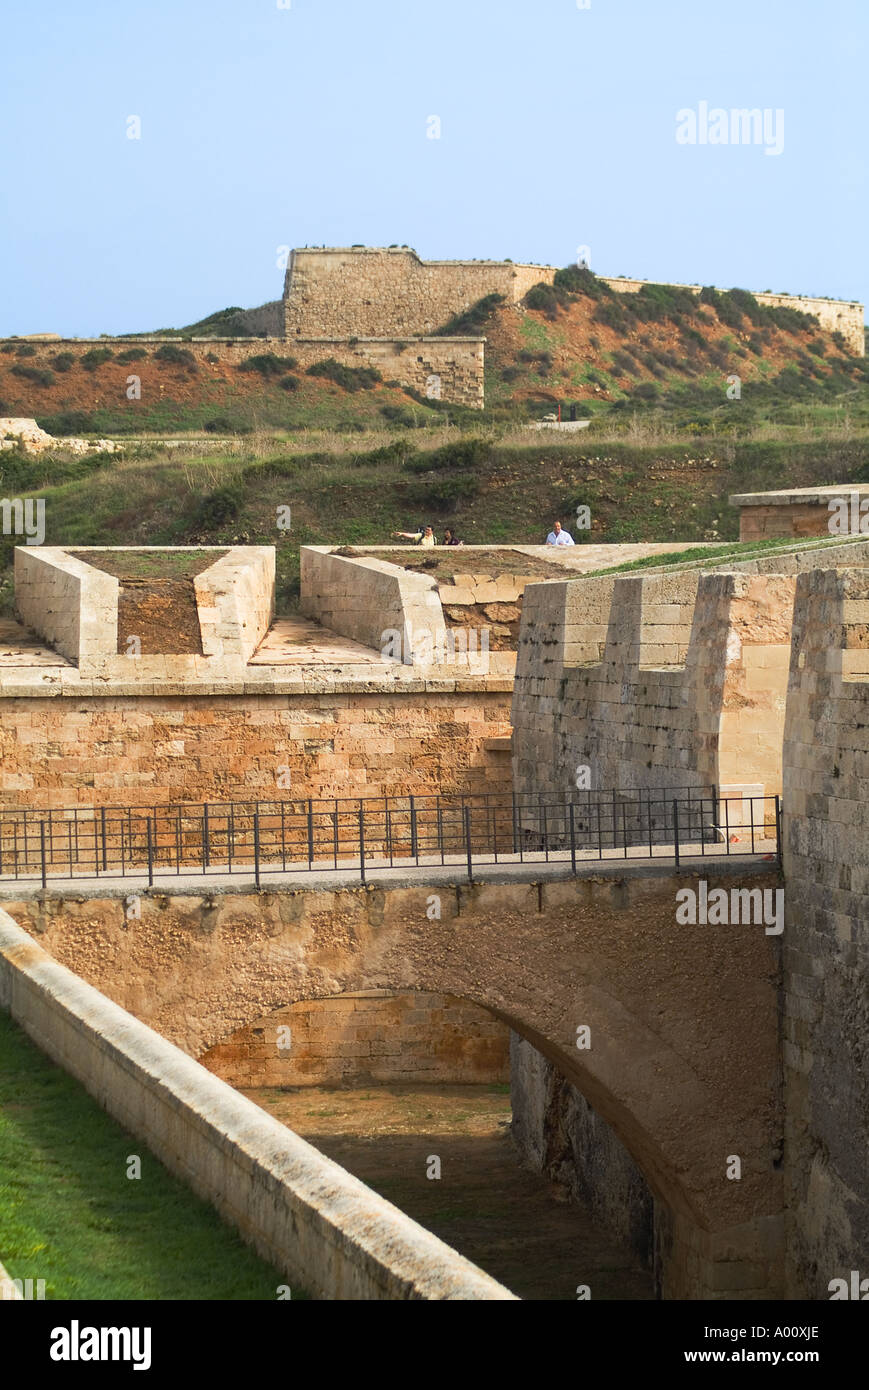 dh La Mola Festung MAHON MENORCA Tourist auf Garnison Festung Wehrgang über dem Graben Stockfoto